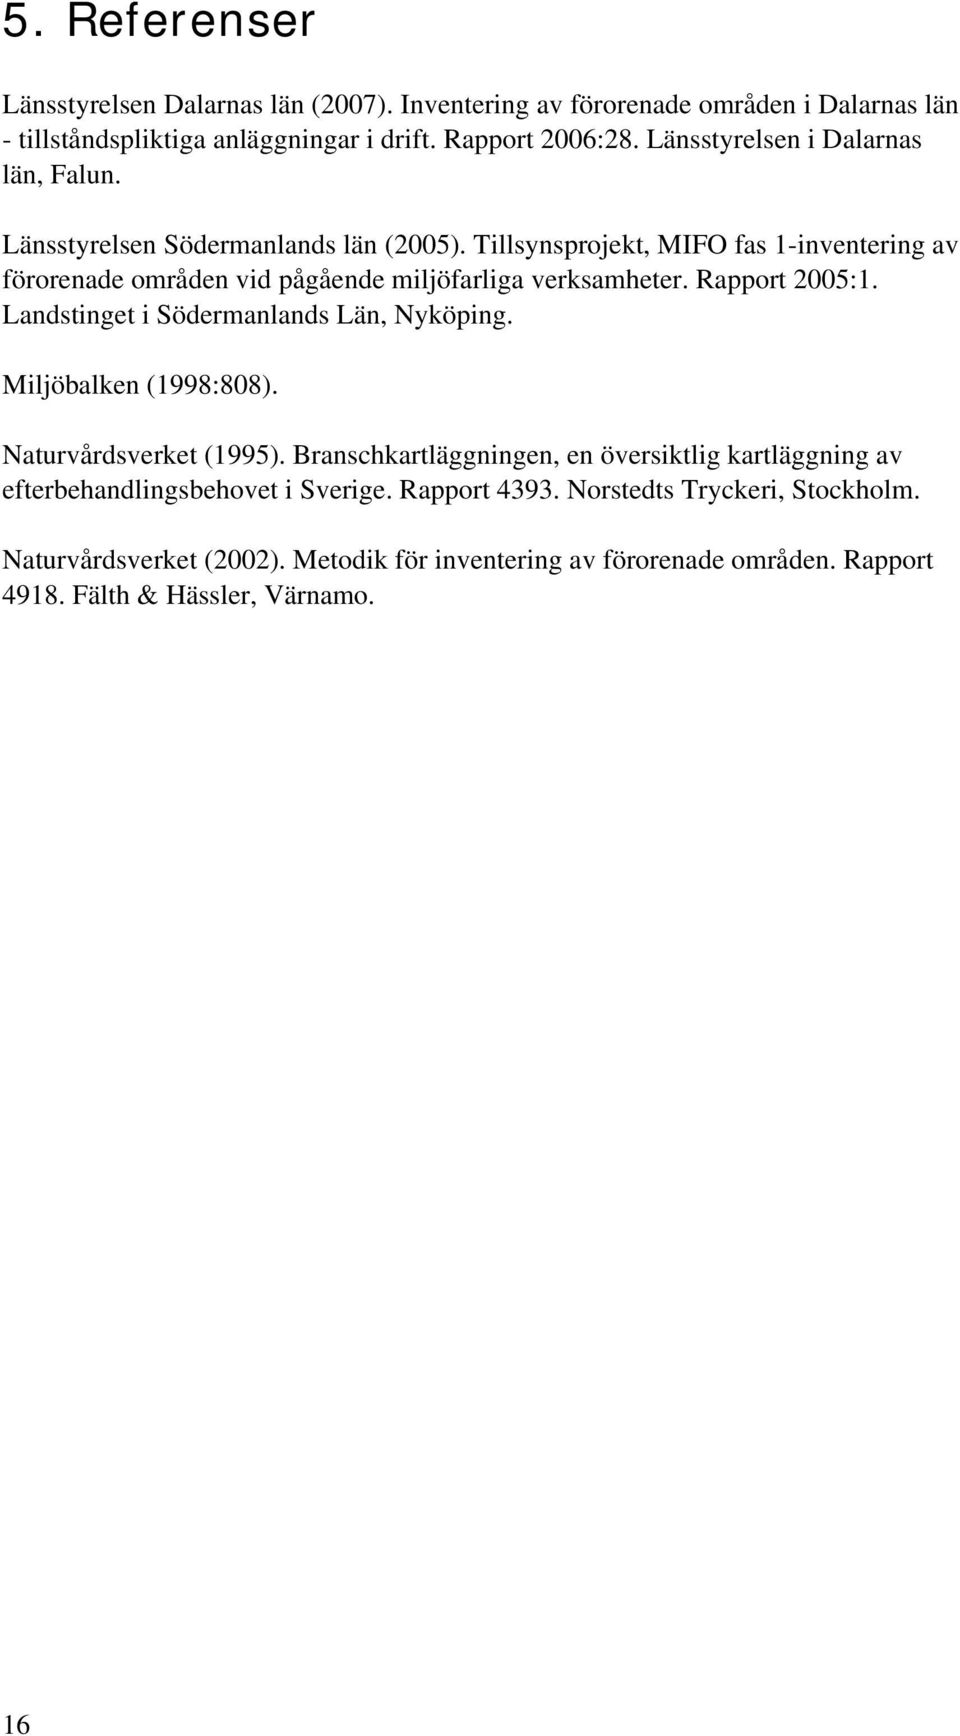 Tillsynsprojekt, MIFO fas 1-inventering av förorenade områden vid pågående miljöfarliga verksamheter. Rapport 2005:1. Landstinget i Södermanlands Län, Nyköping.